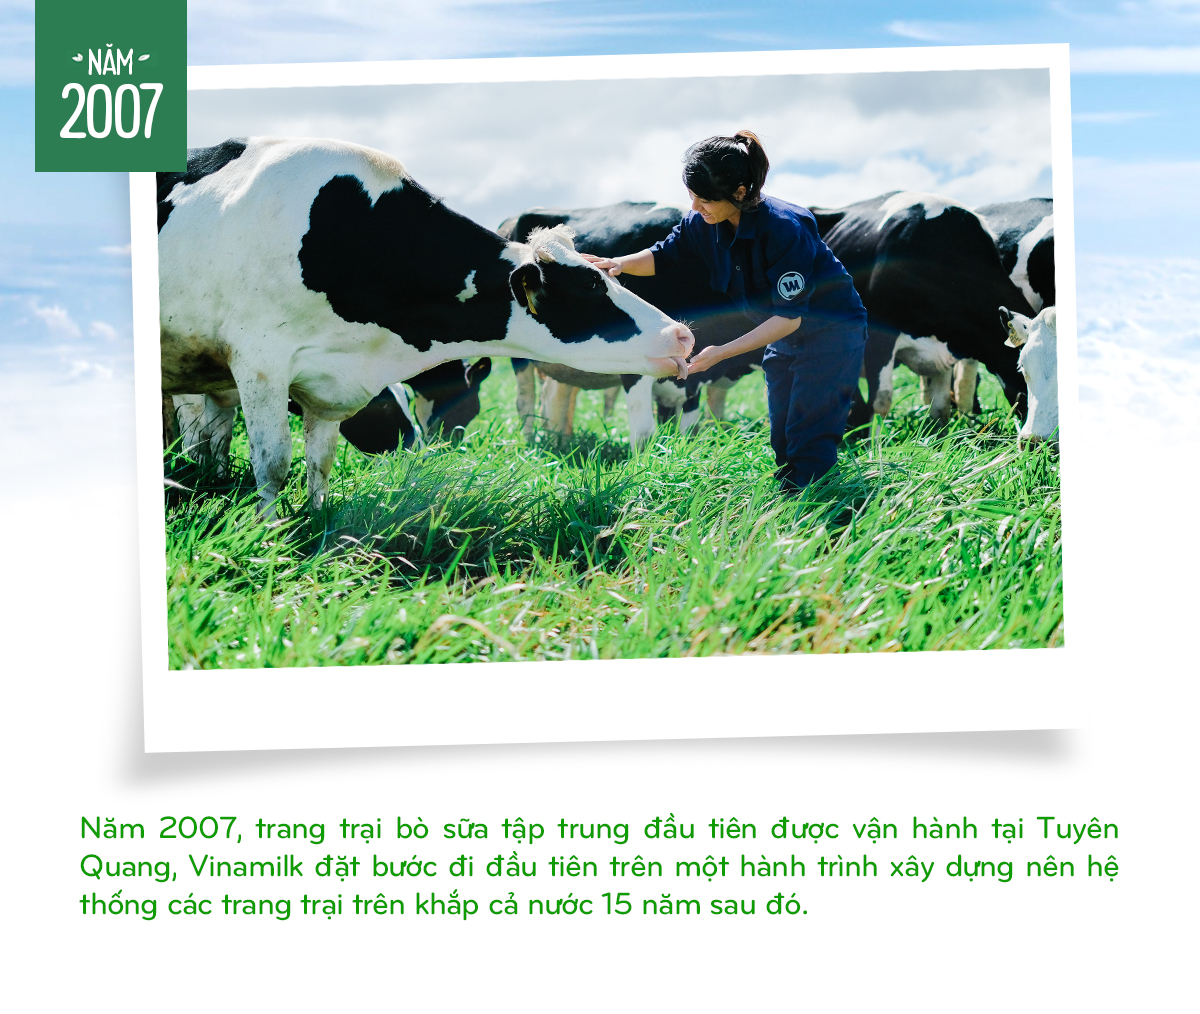 15 năm xây dựng hệ thống Trang trại Bò sữa Vinamilk - Tạp chí điện tử Bảo vệ Rừng và Môi trường